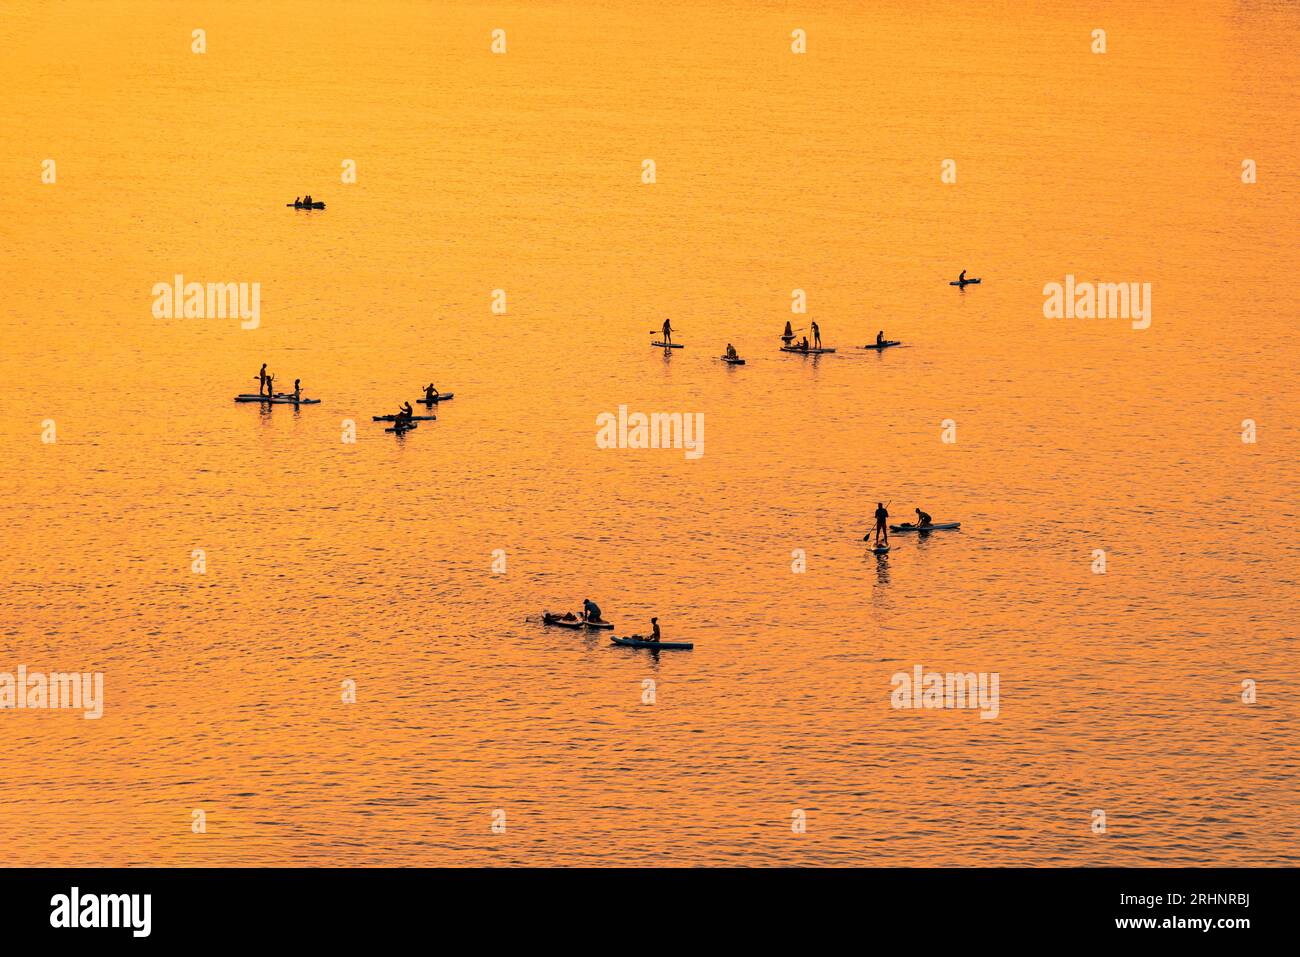 Le persone avventurose su una tavola da paddle stand up stanno pagaiando durante una luminosa e vibrante alba Foto Stock